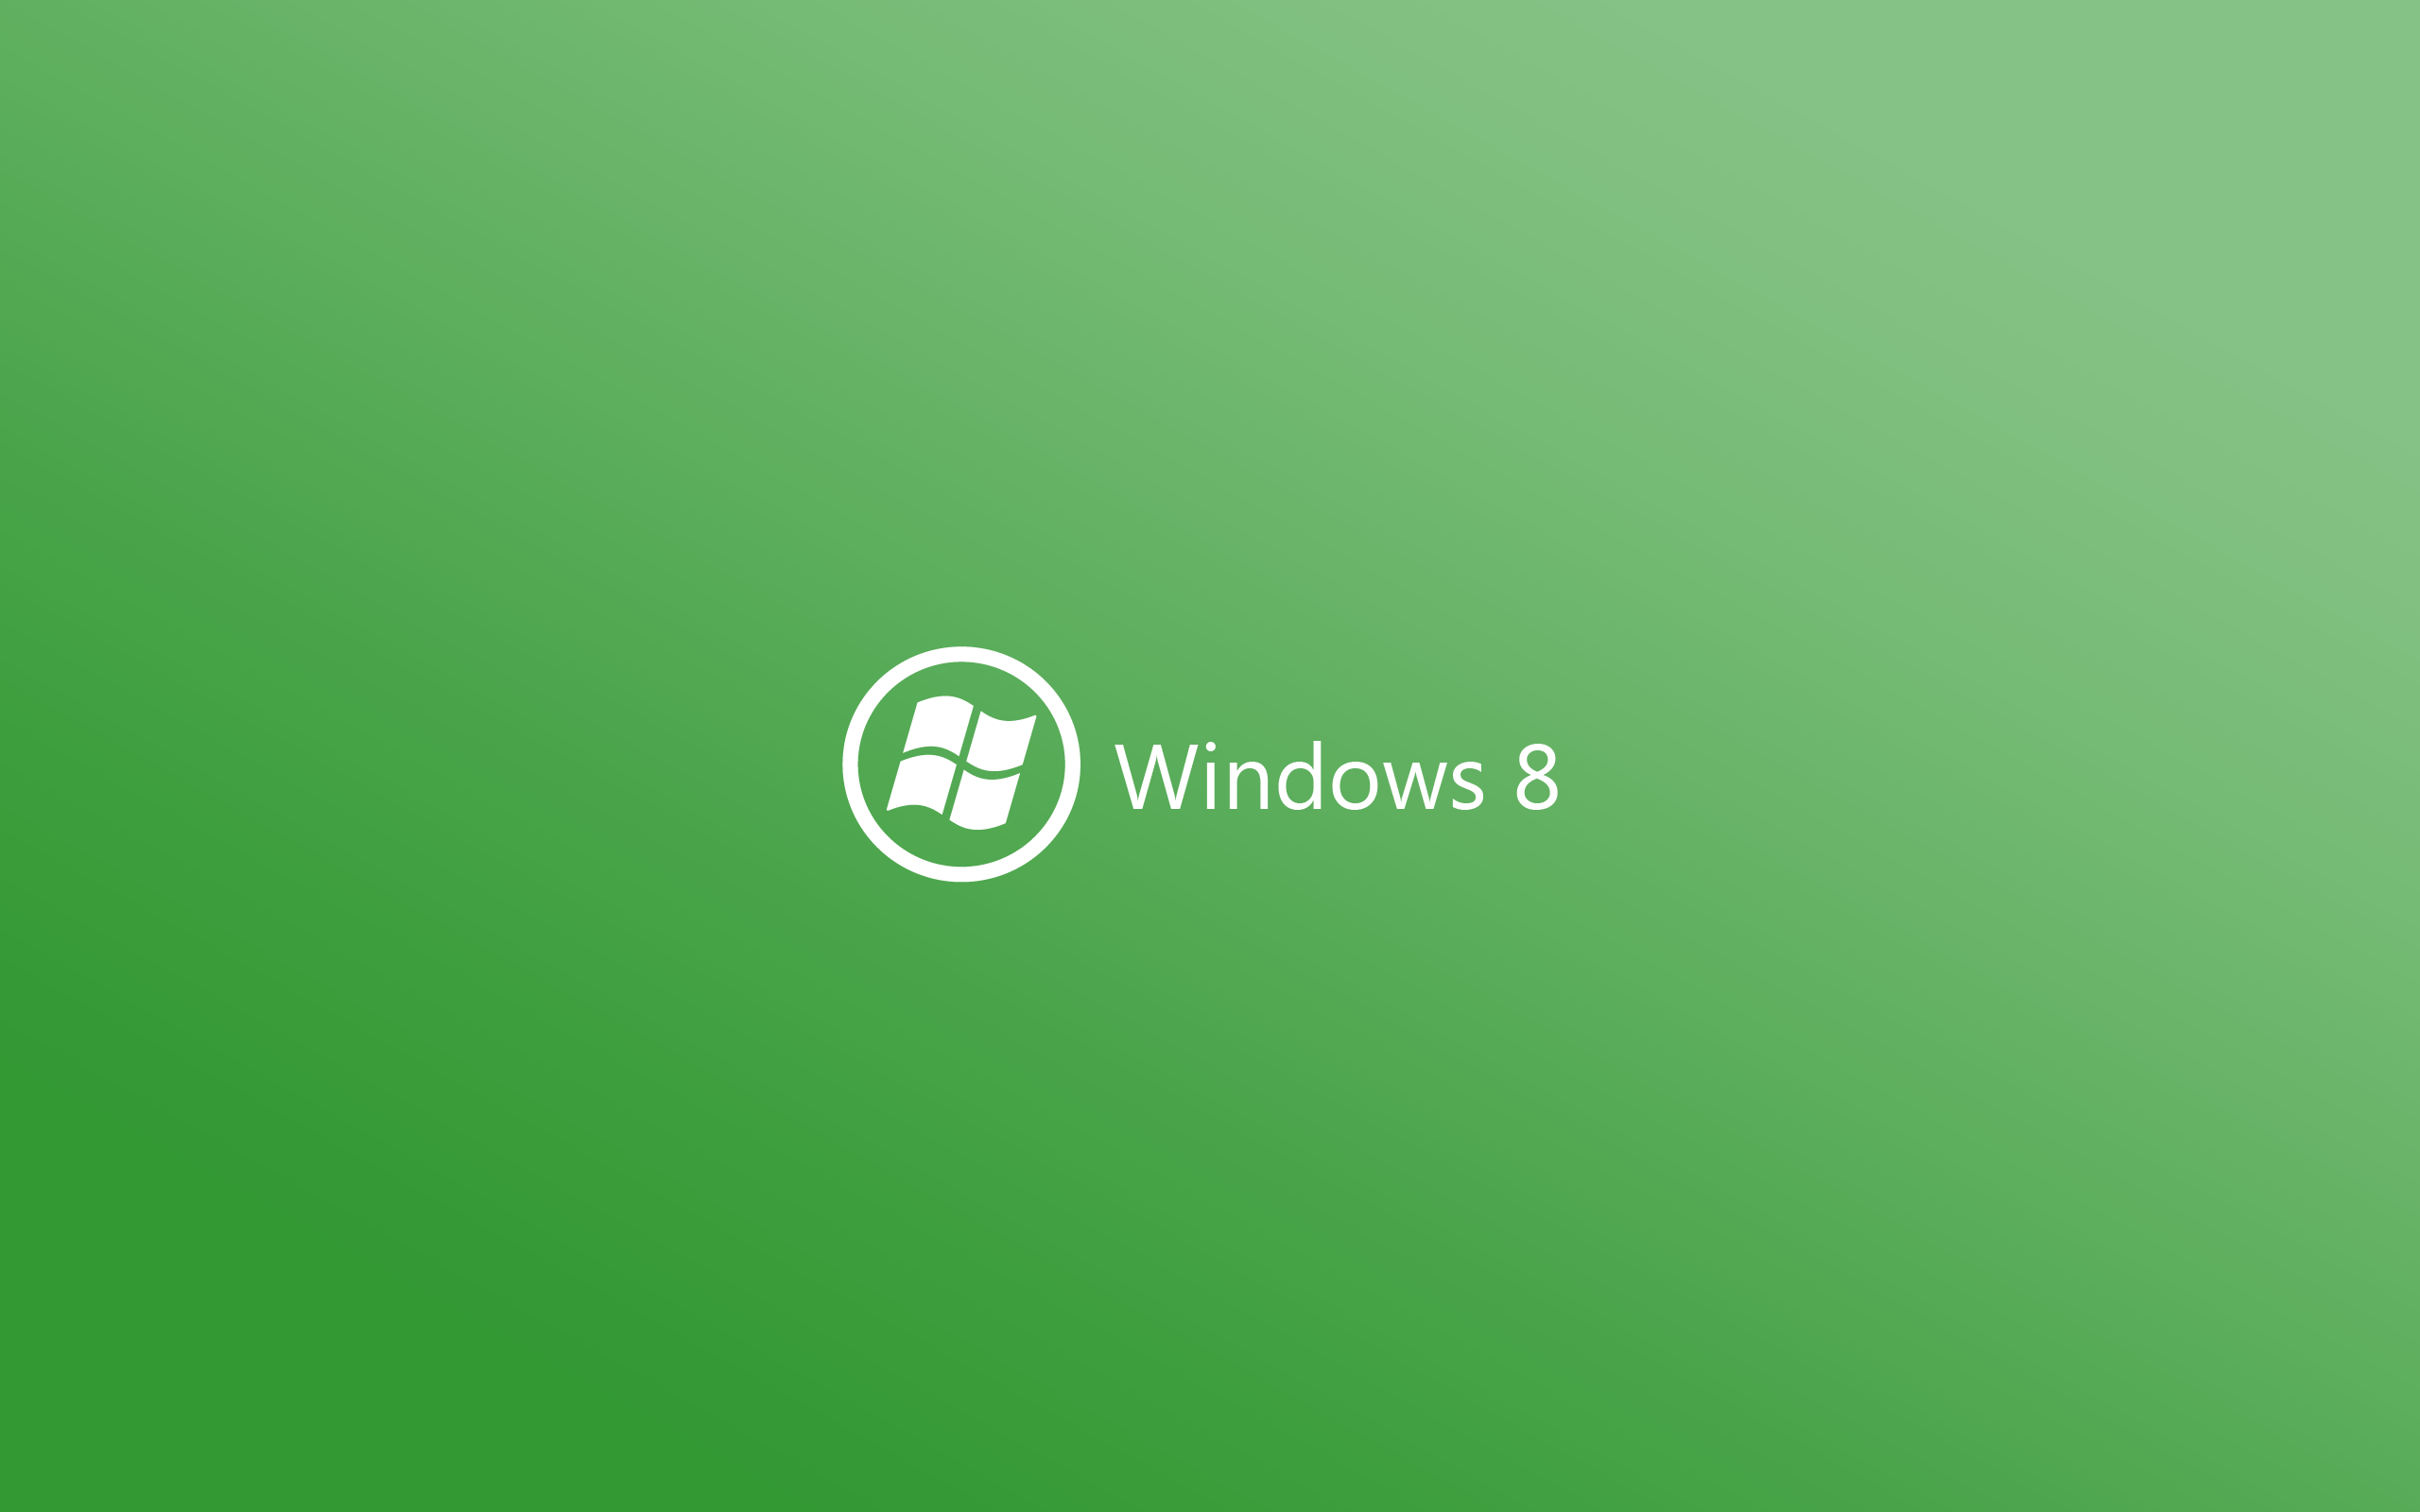 зеленый, минималистичный, DeviantART, Windows 8 - обои на рабочий стол